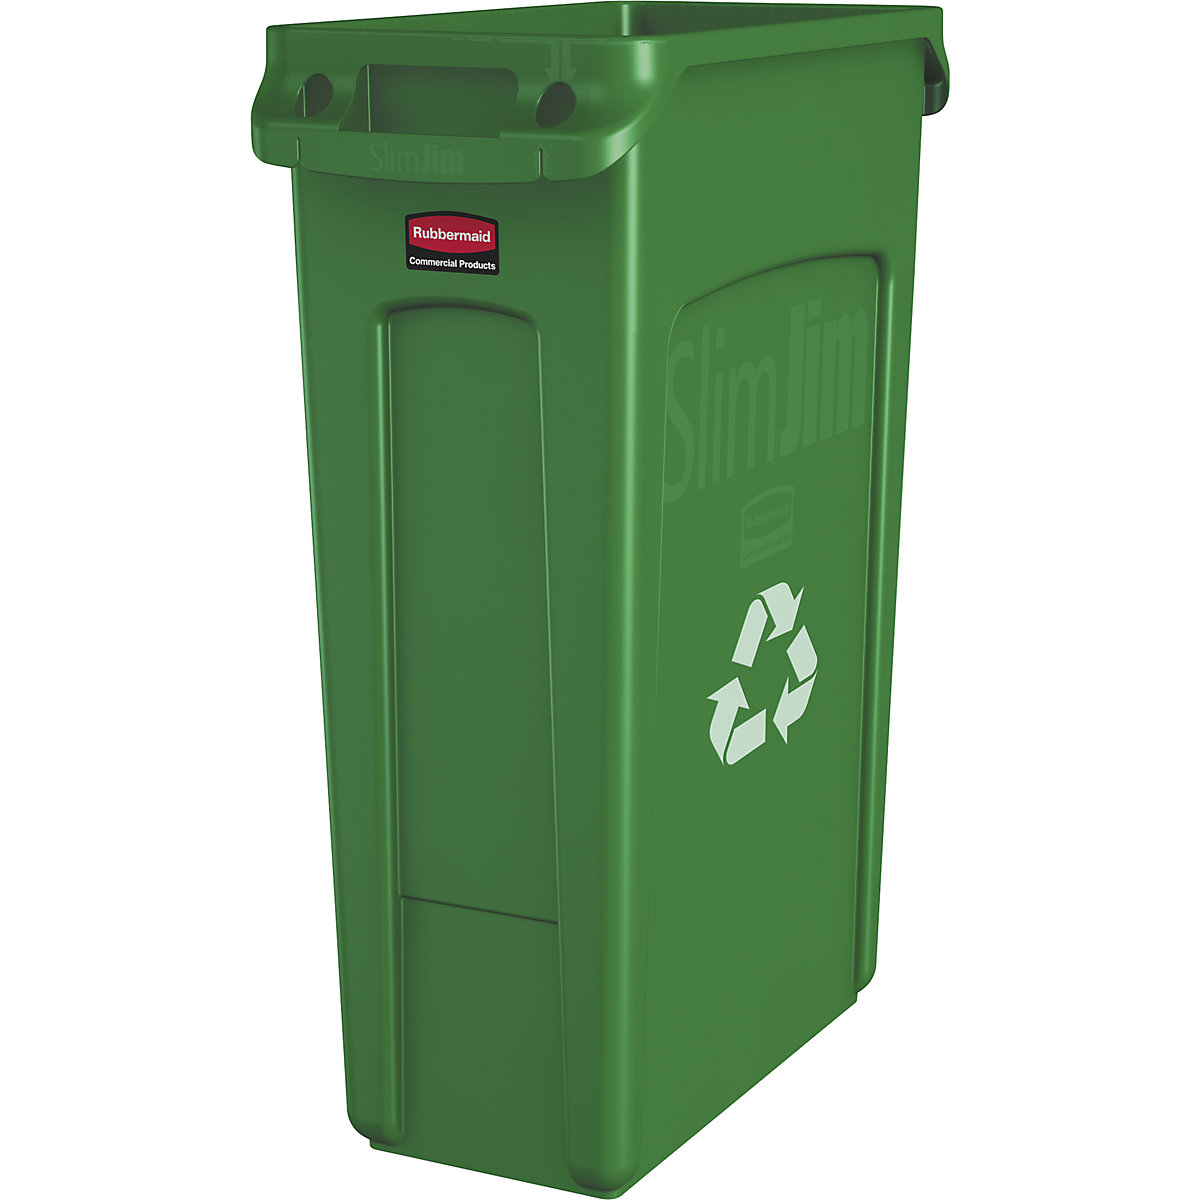 SLIM JIM® szelektív hulladékgyűjtő/szemetesvödör – Rubbermaid, űrtartalom 87 l, szellőzőcsatornákkal, zöld, újrahasznosítási szimbólummal, 3 db-tól-11